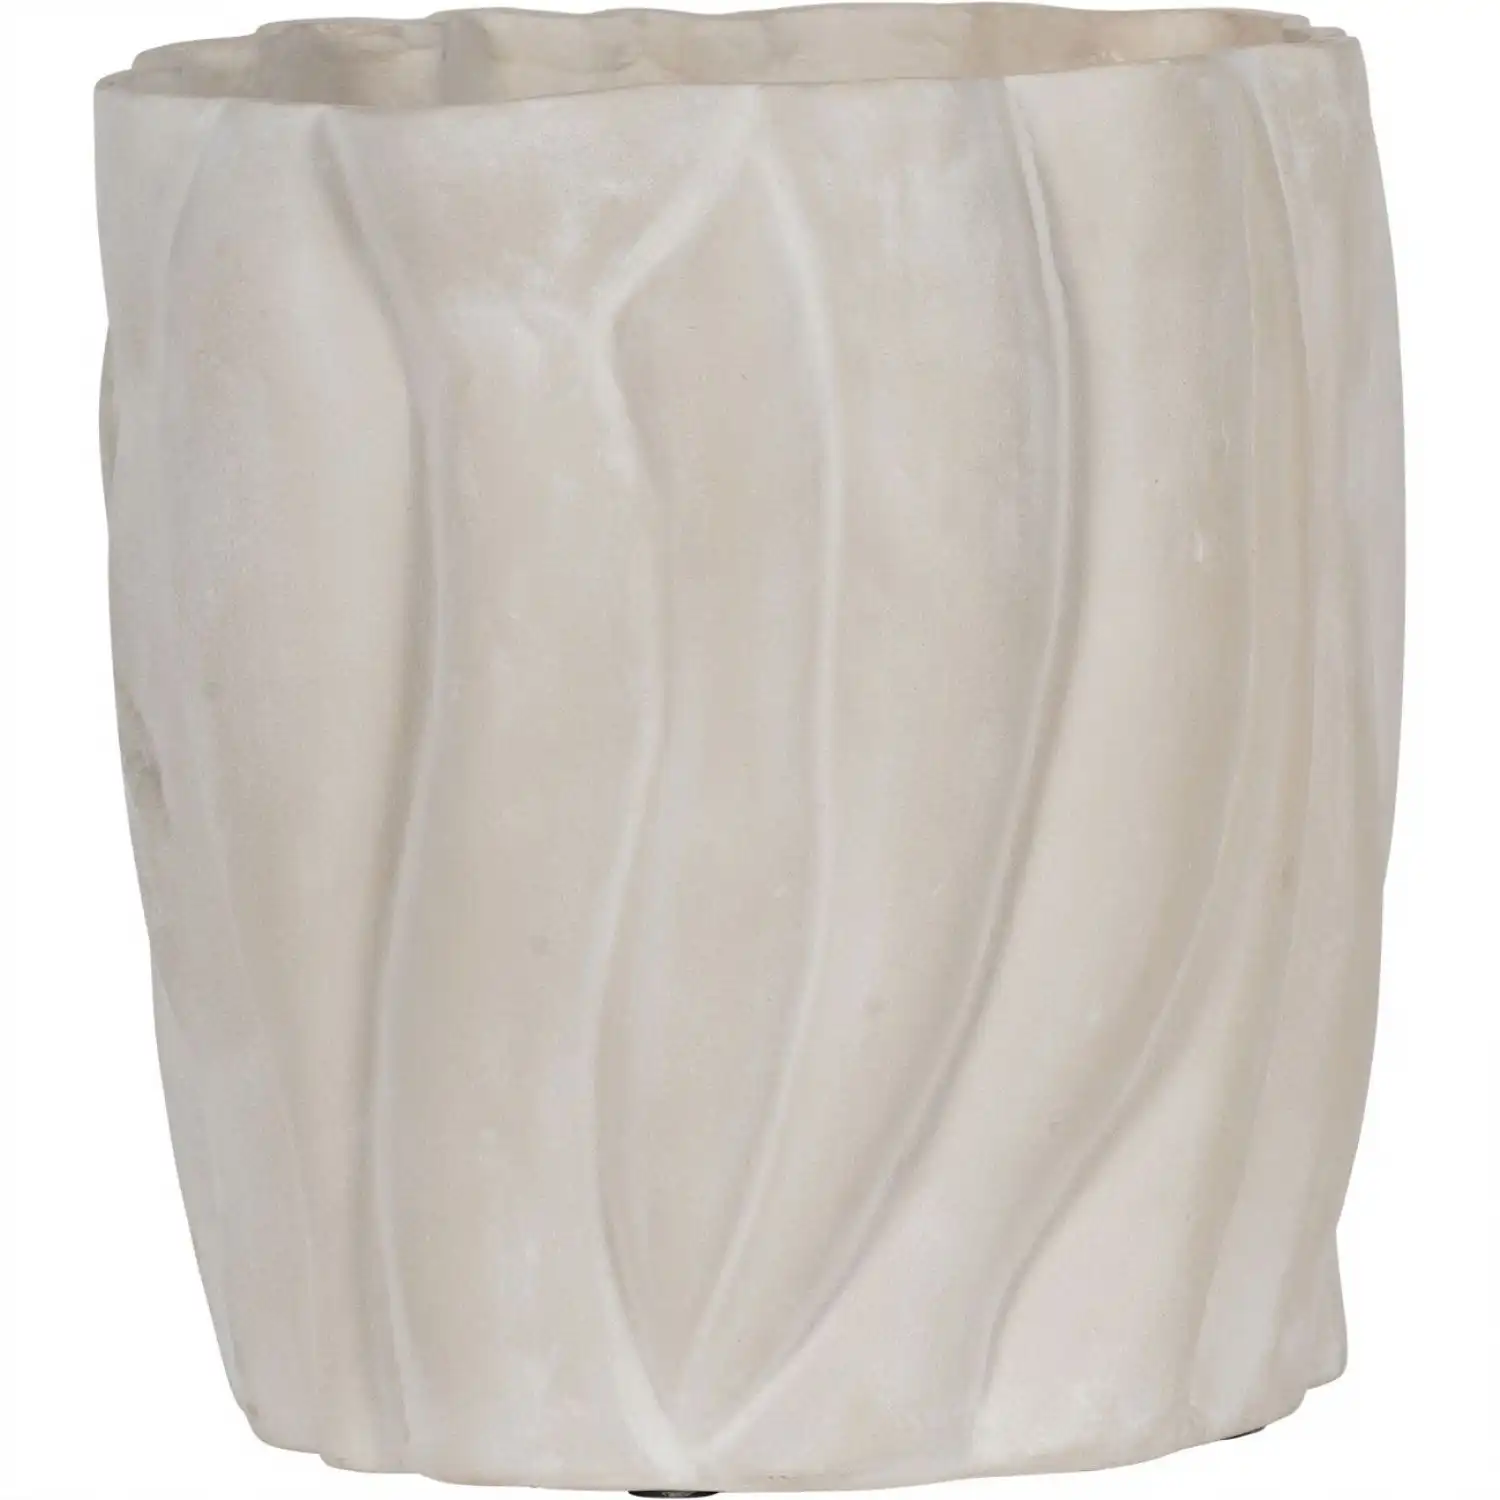 Ecomix Vase Large